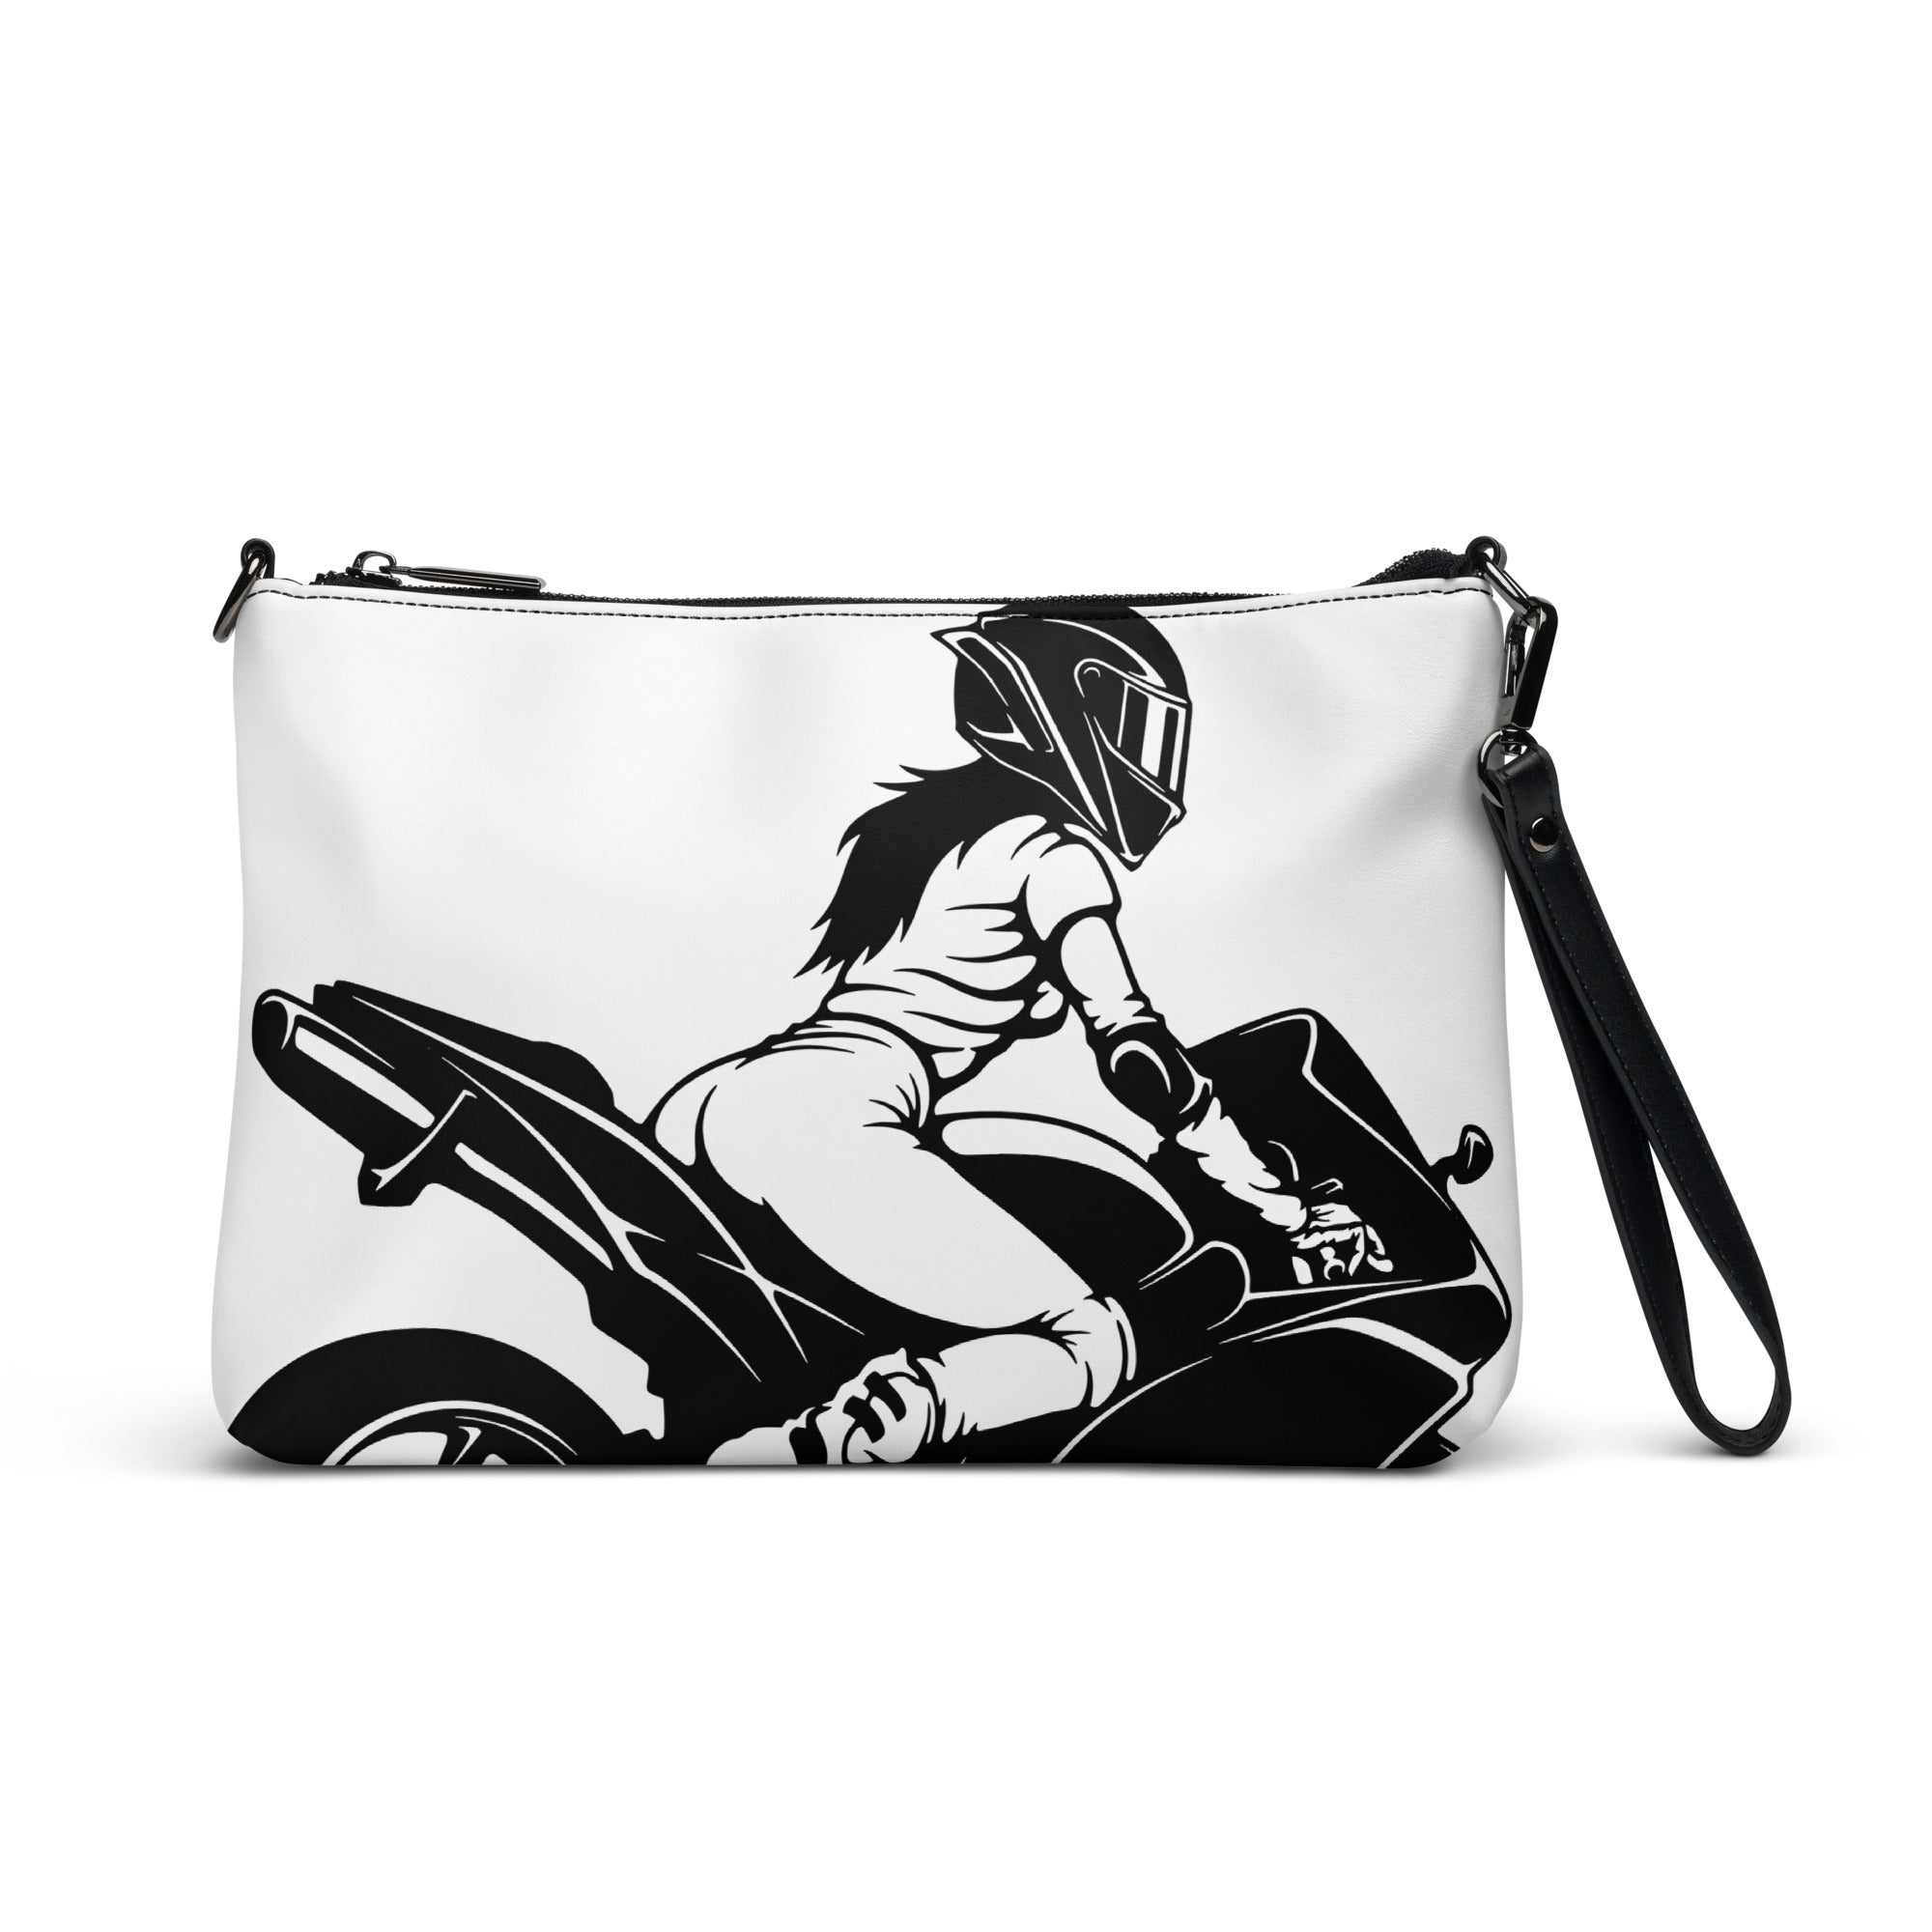 Motorrad-Art, Umhängetasche für Mädchen und Frauen mit Motorrad und Motorradfahrer als Motiv, weiße Tasche mit Innenfächern, Motiv mit witzigem Bikerslogan